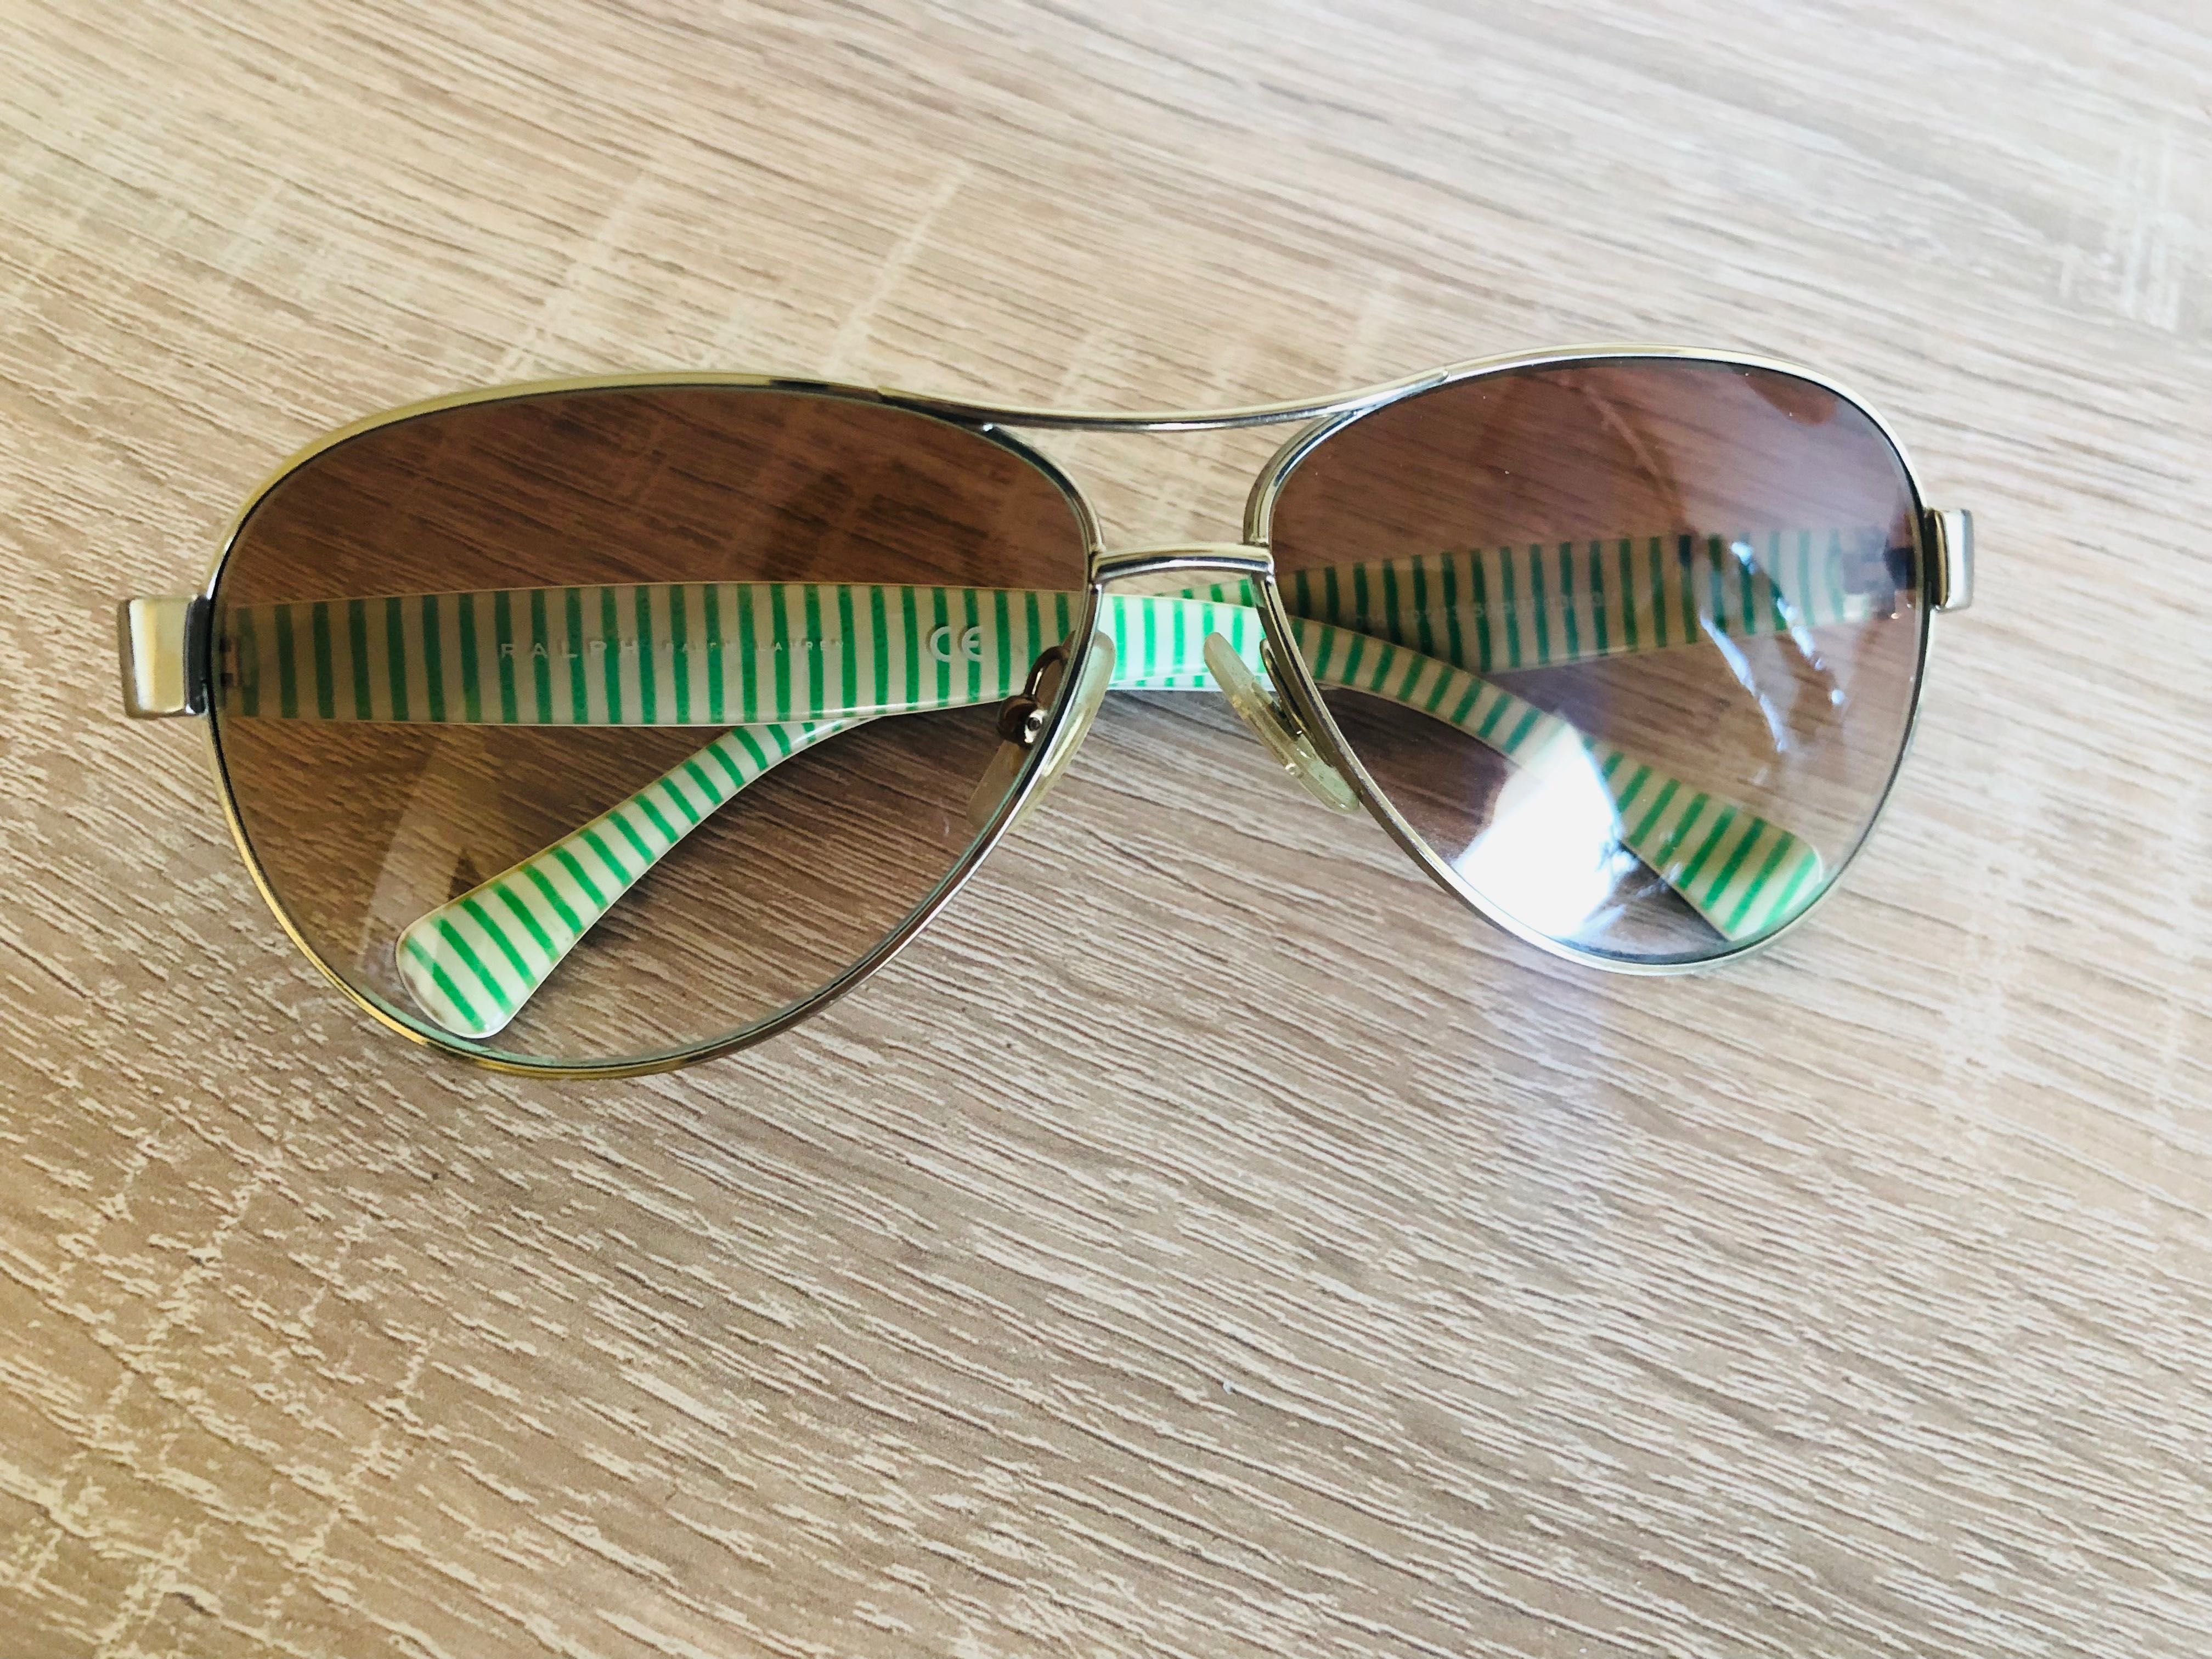 Okulary przeciwsłoneczne Ralph Lauren złote